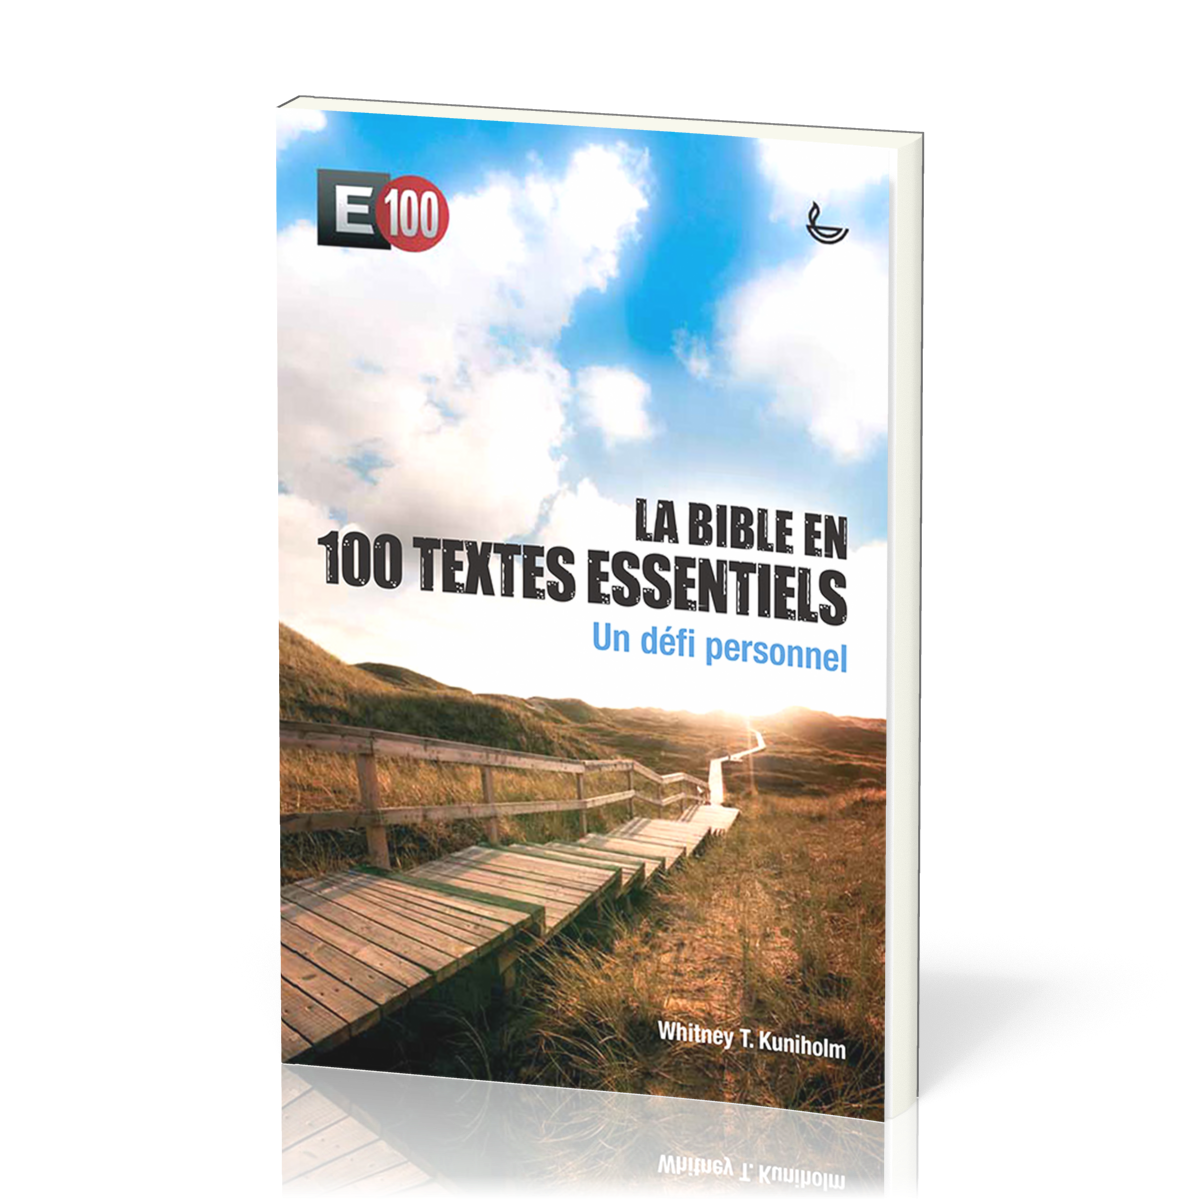 Bible en 100 textes essentiels  (La) - E100 un défi personnel